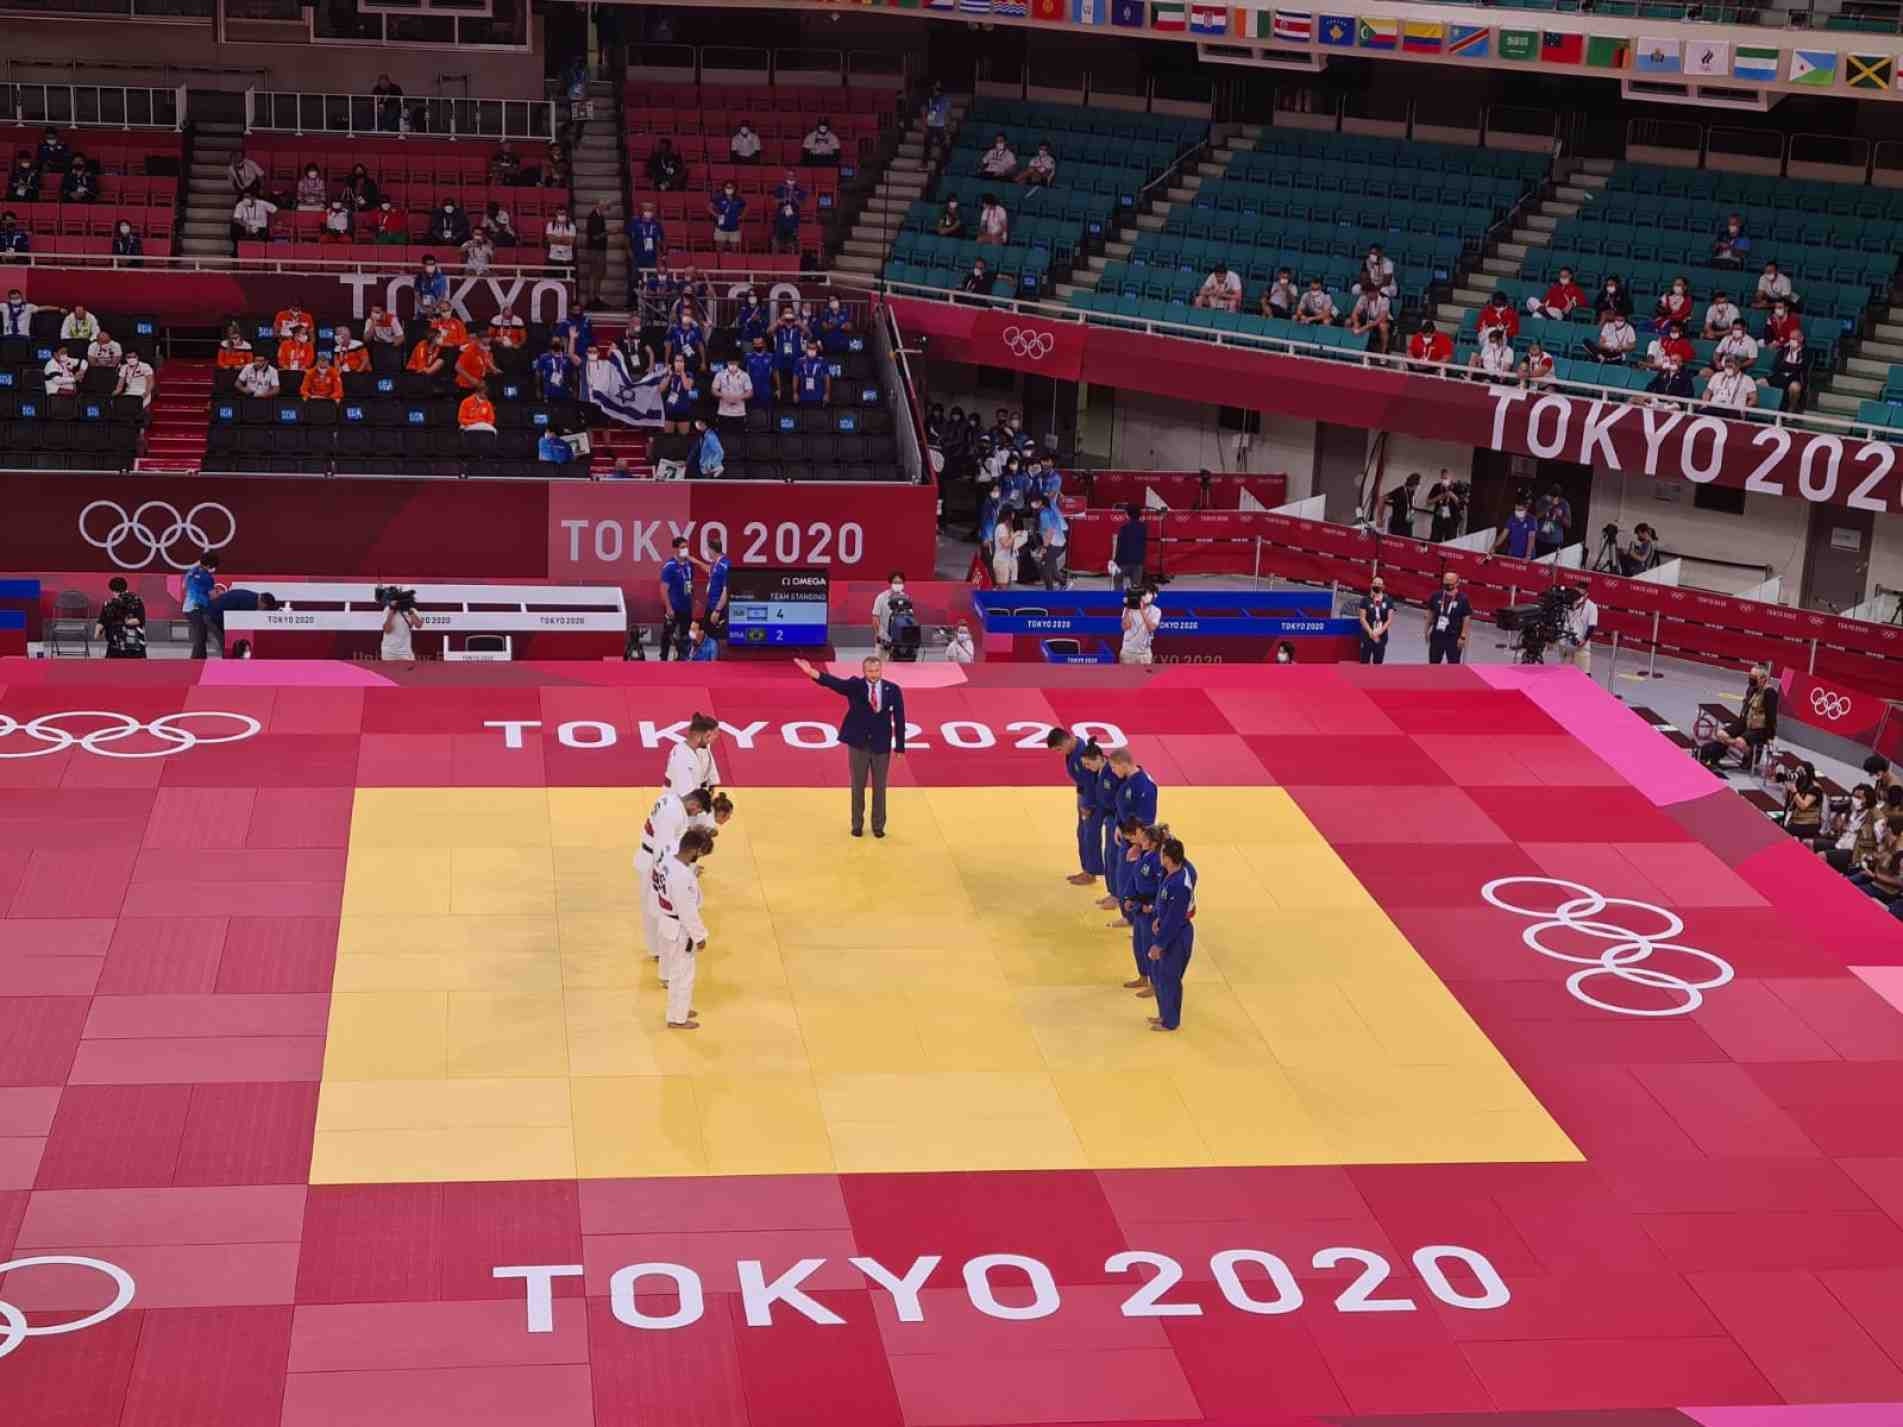 O Brasil se despediu de Tóquio com a sétima colocação na competição por equipes de judô